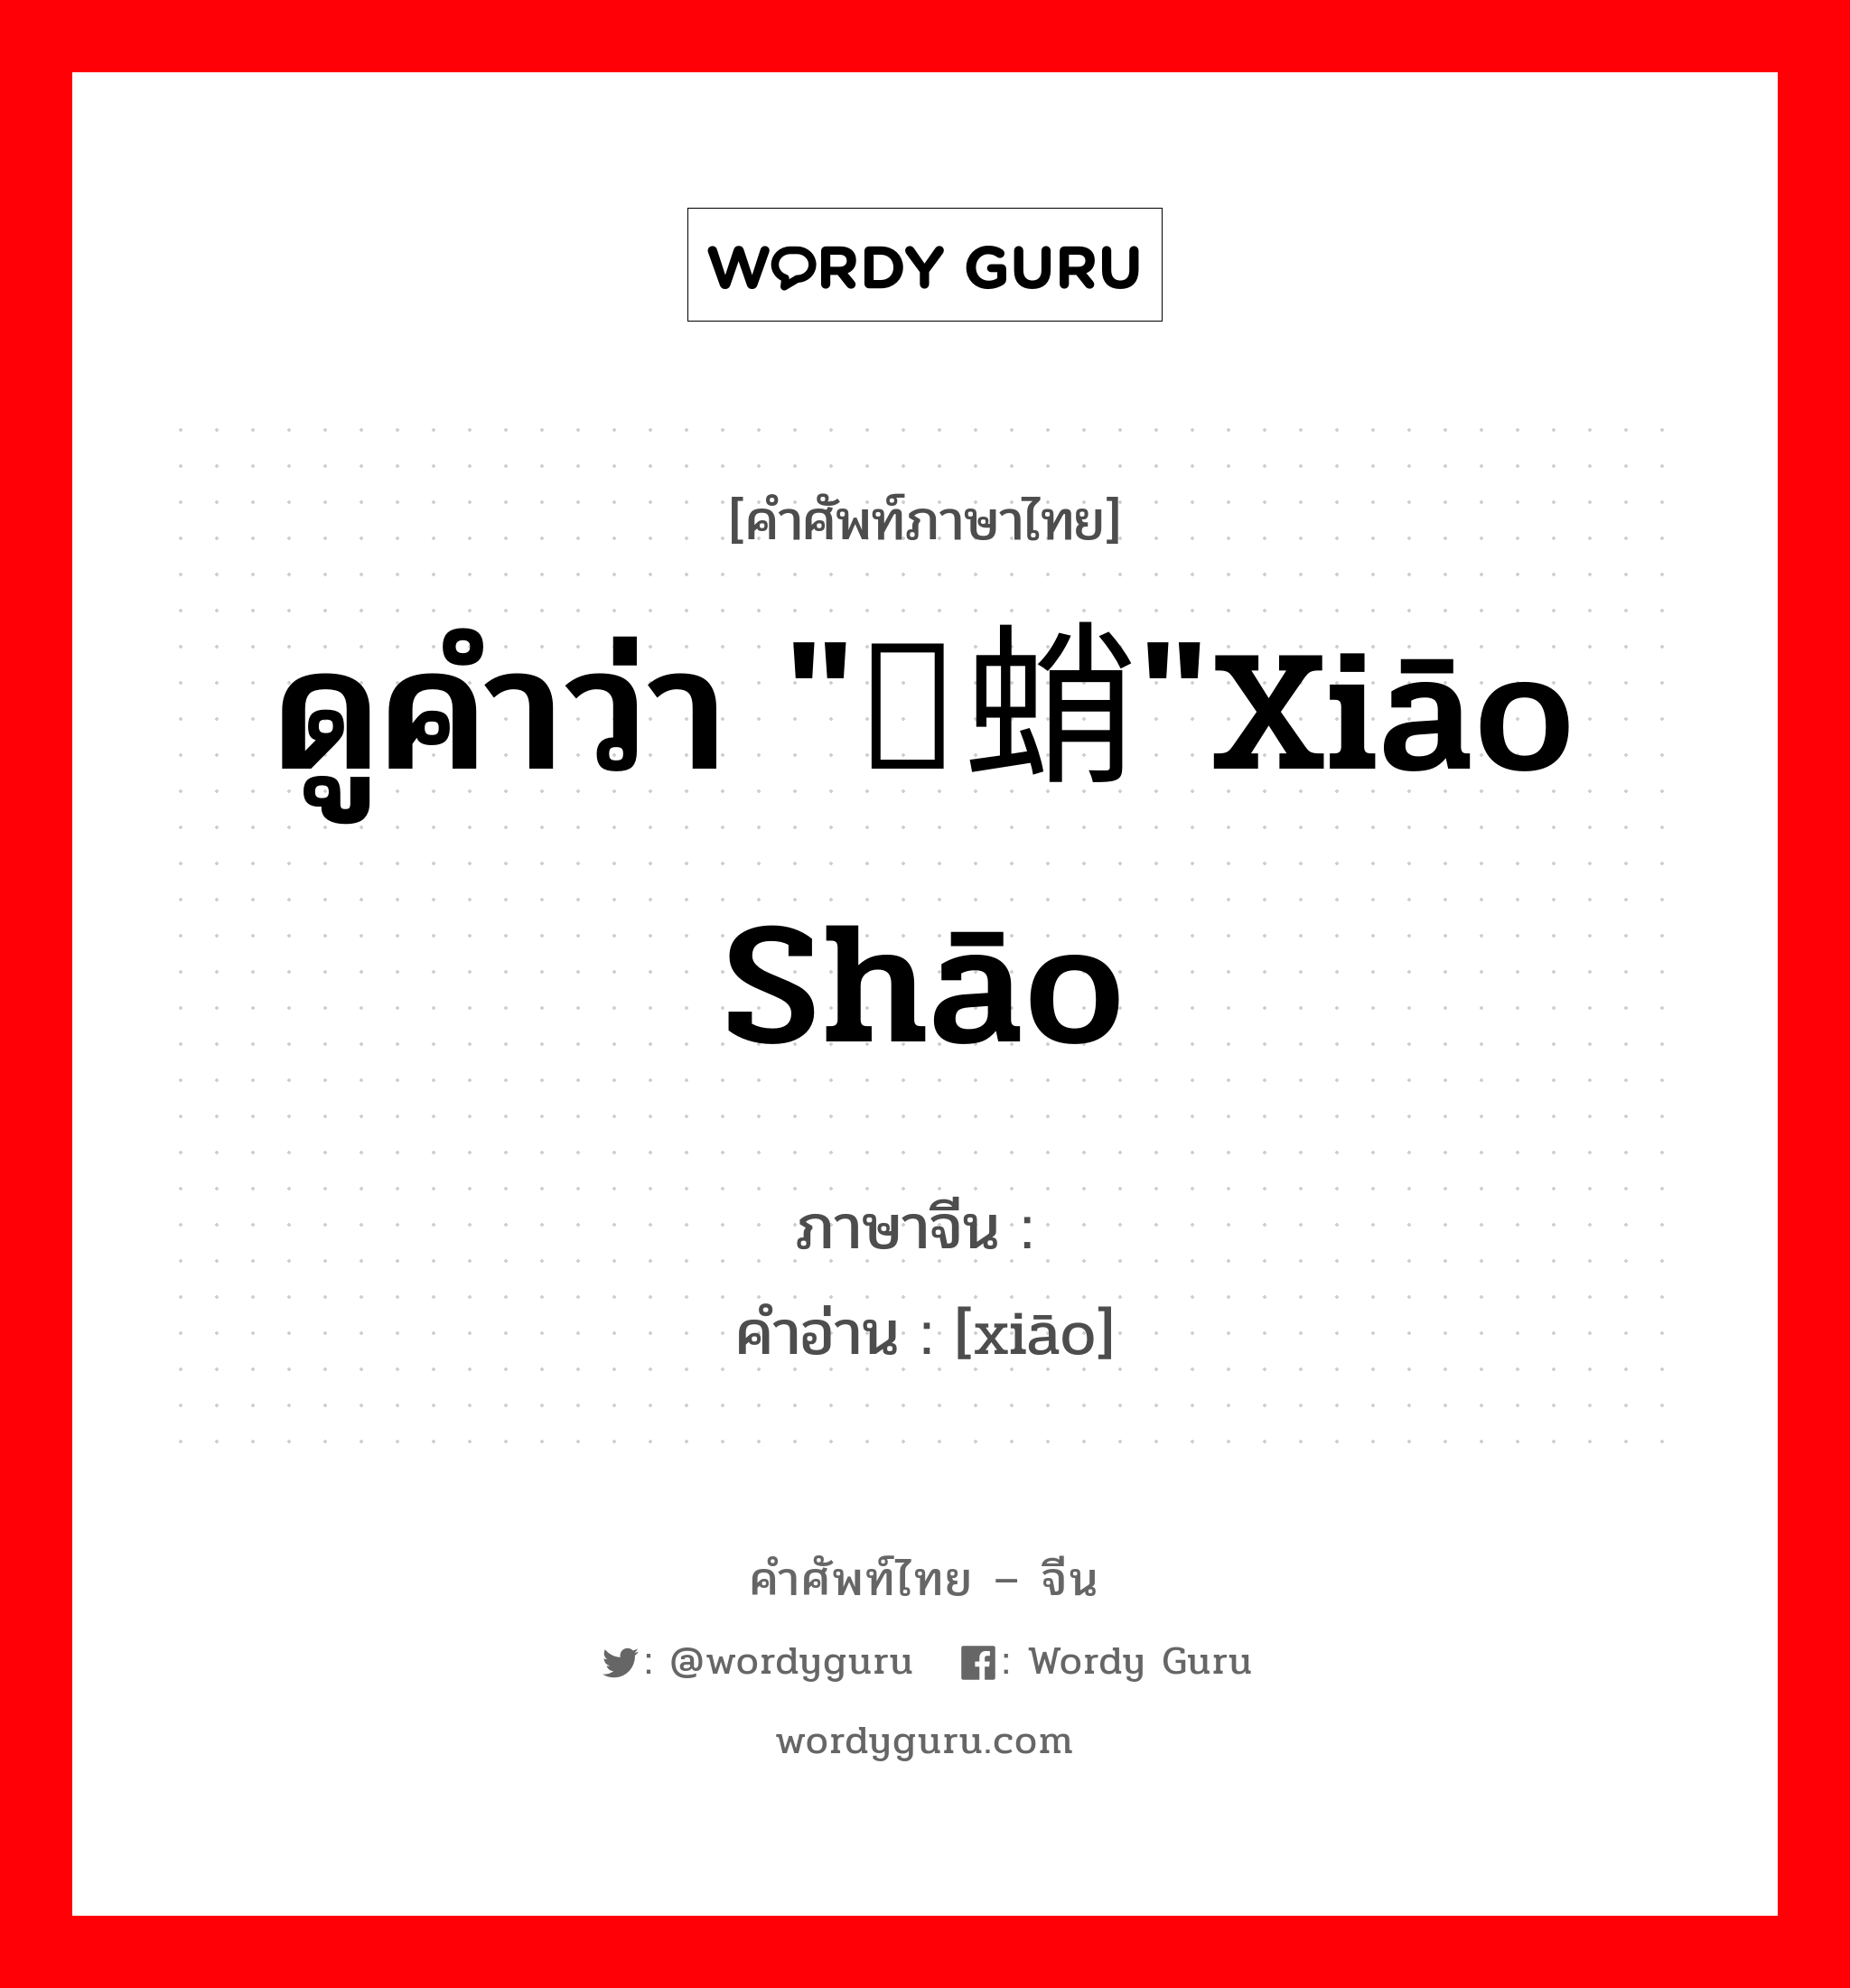 ดูคำว่า "蟏蛸"xiāo shāo ภาษาจีนคืออะไร, คำศัพท์ภาษาไทย - จีน ดูคำว่า "蟏蛸"xiāo shāo ภาษาจีน 蟏 คำอ่าน [xiāo]